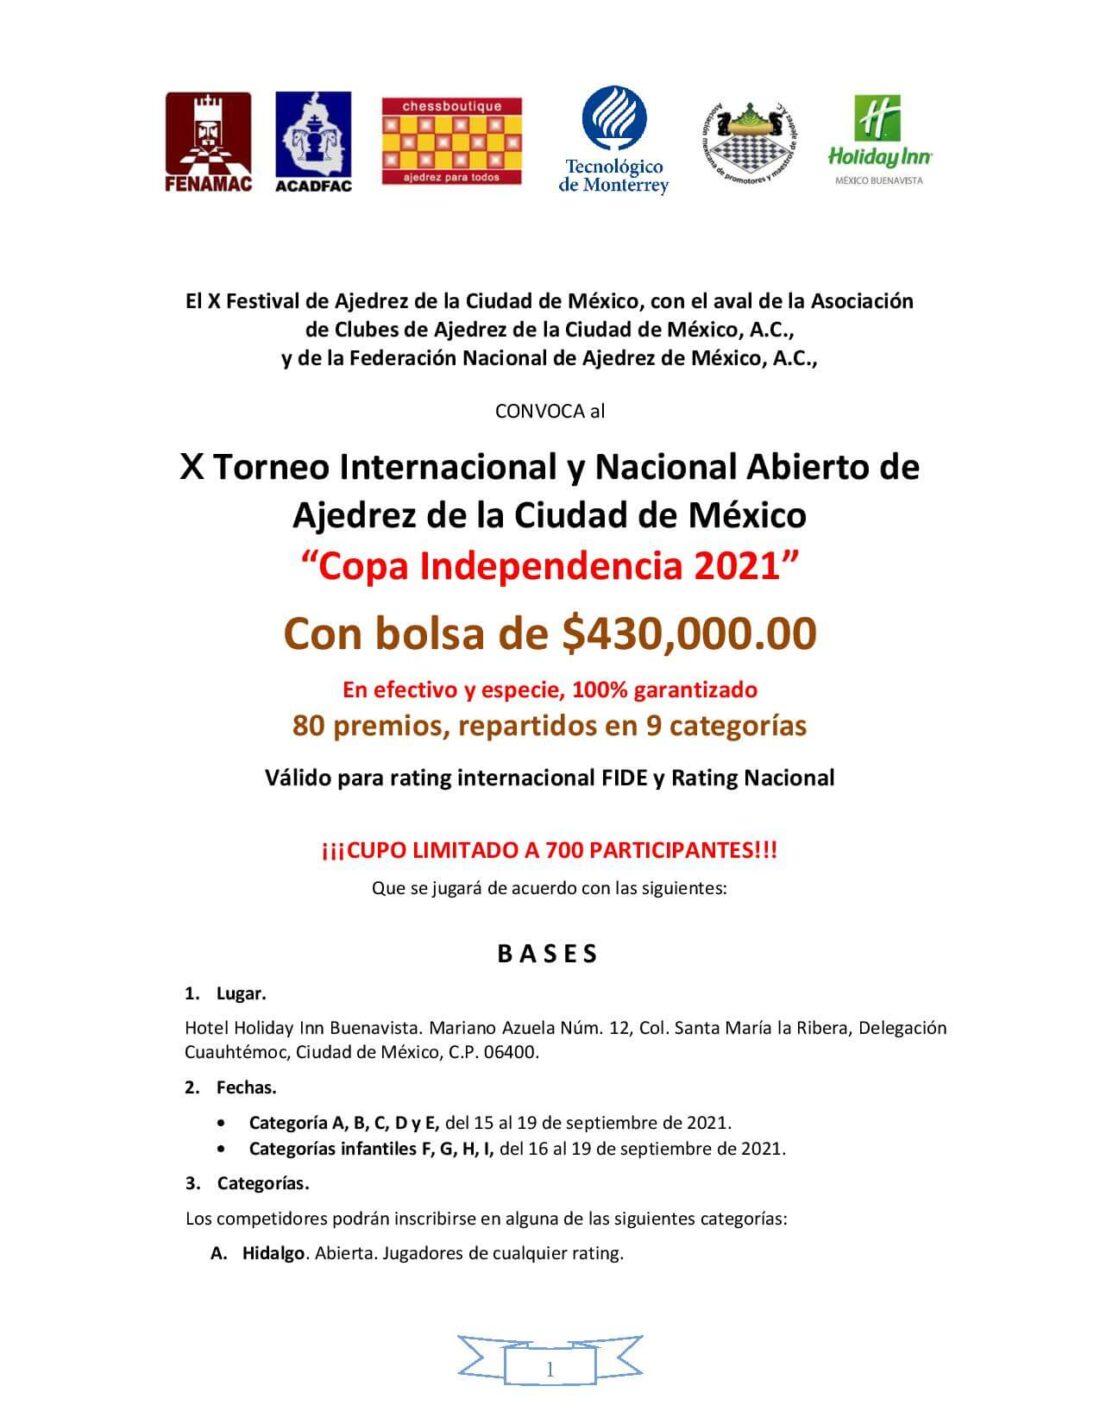 Convocatorio de  X Torneo Internacional Y Nacional Abierto De Ajedrez De La Ciudad De Mexico “copa Independencia 2021”